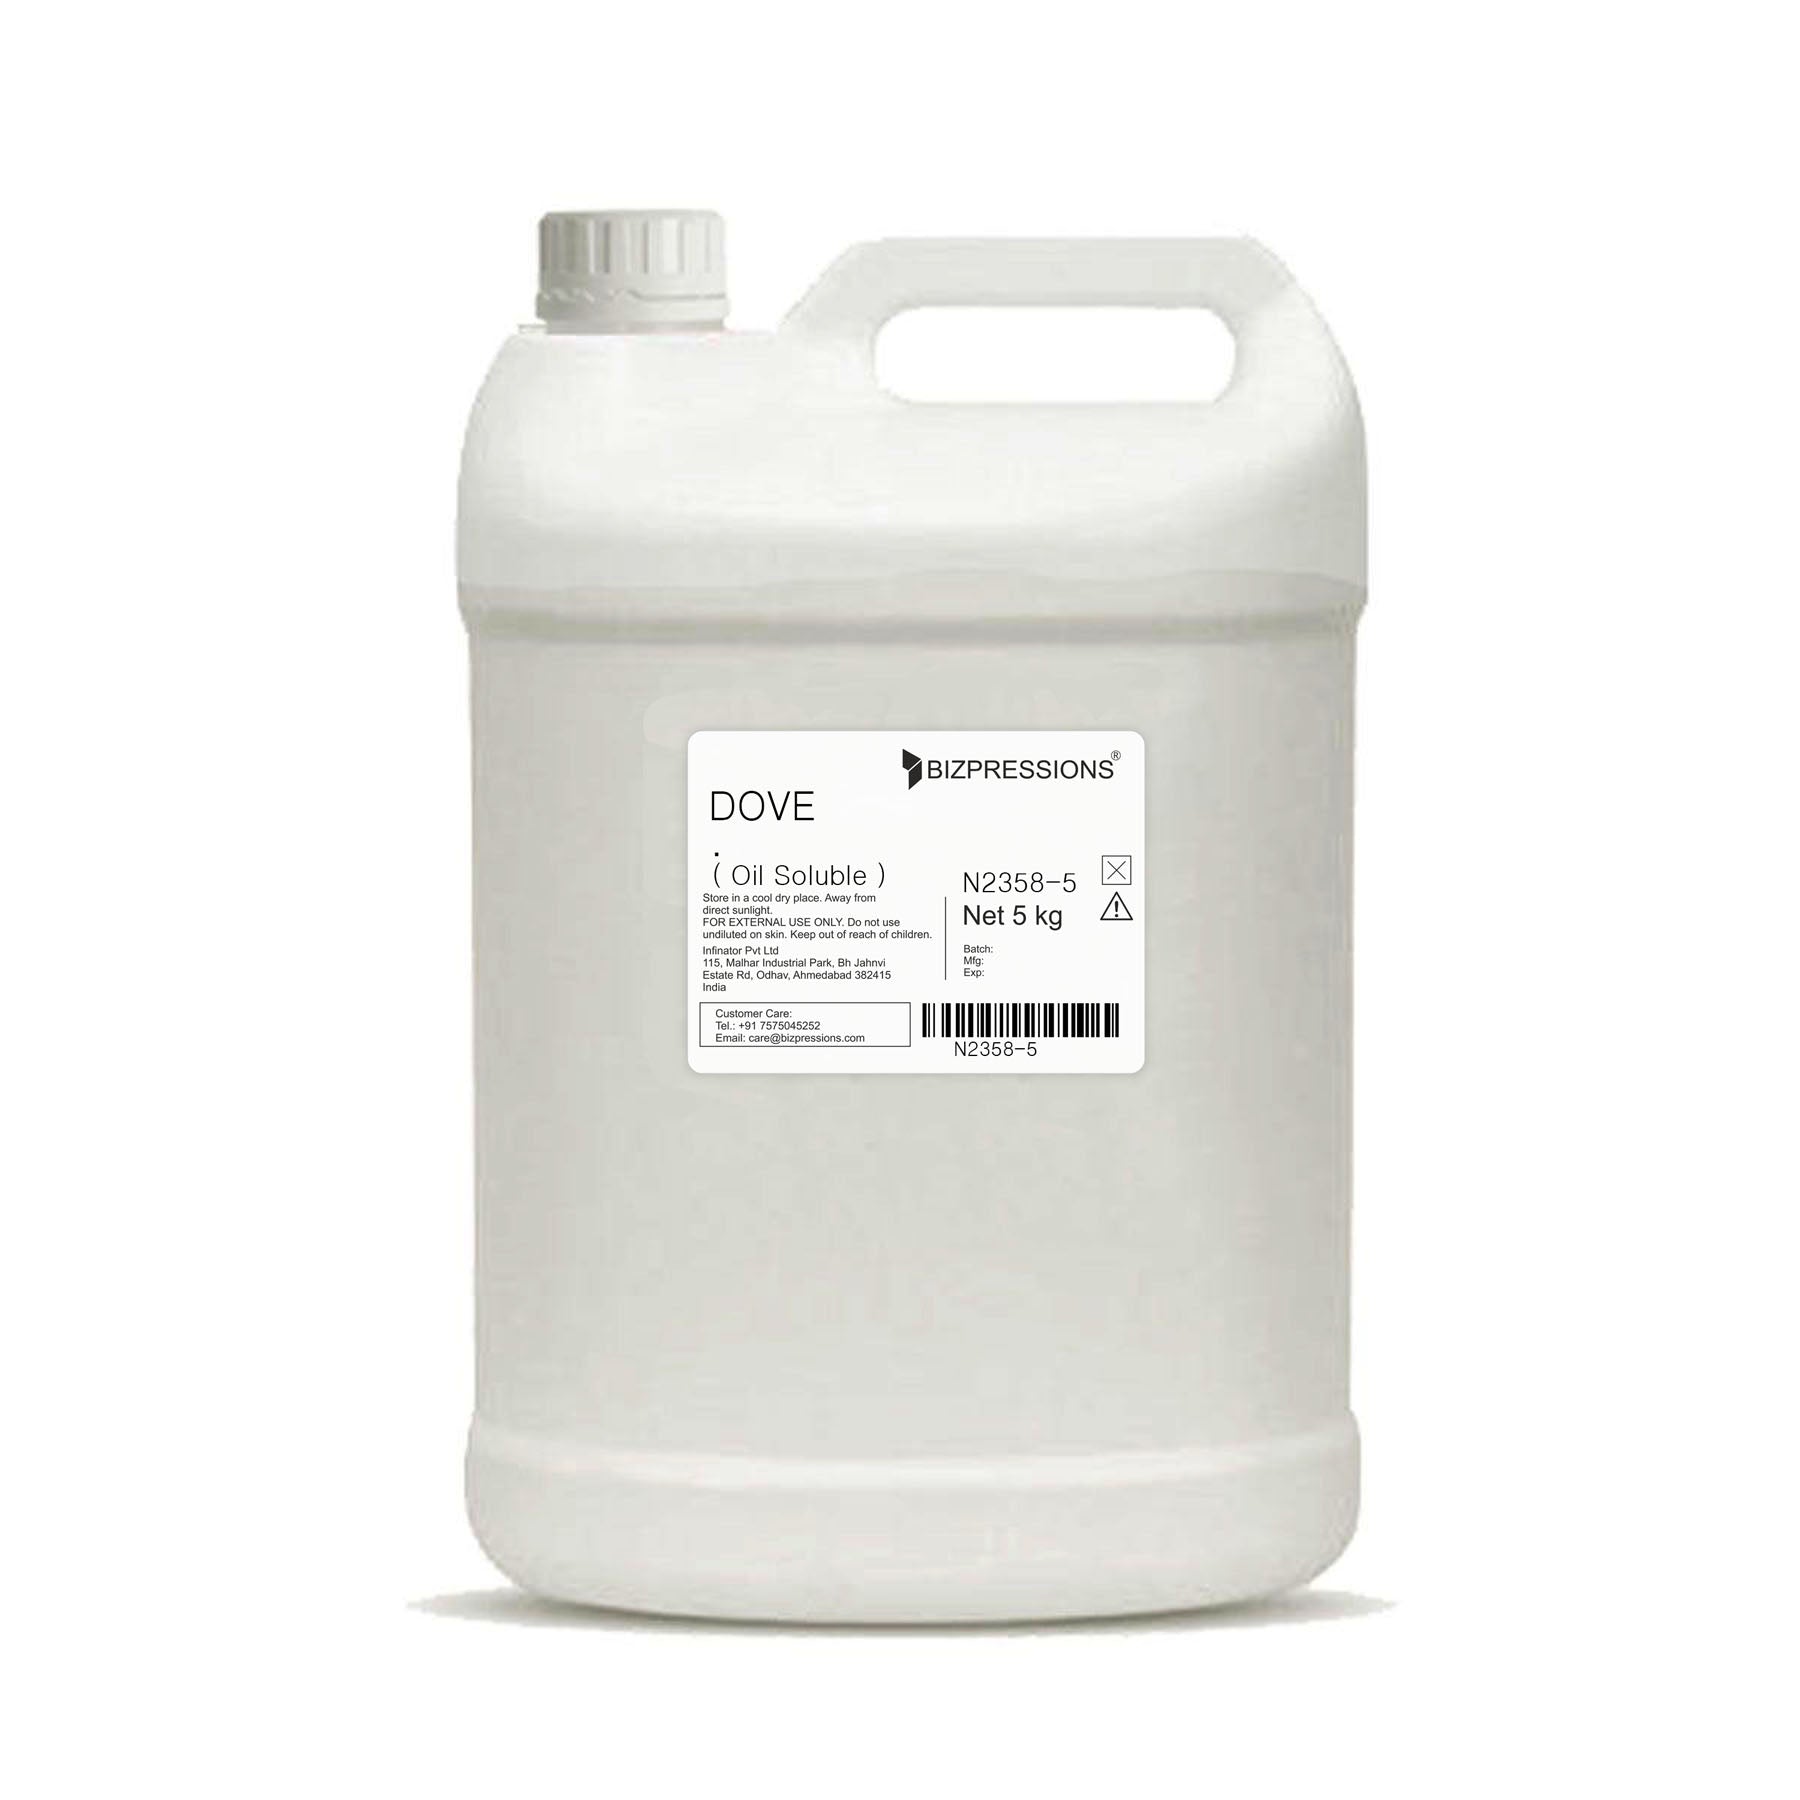 DOVE - Fragrance ( Oil Soluble ) - 5 kg